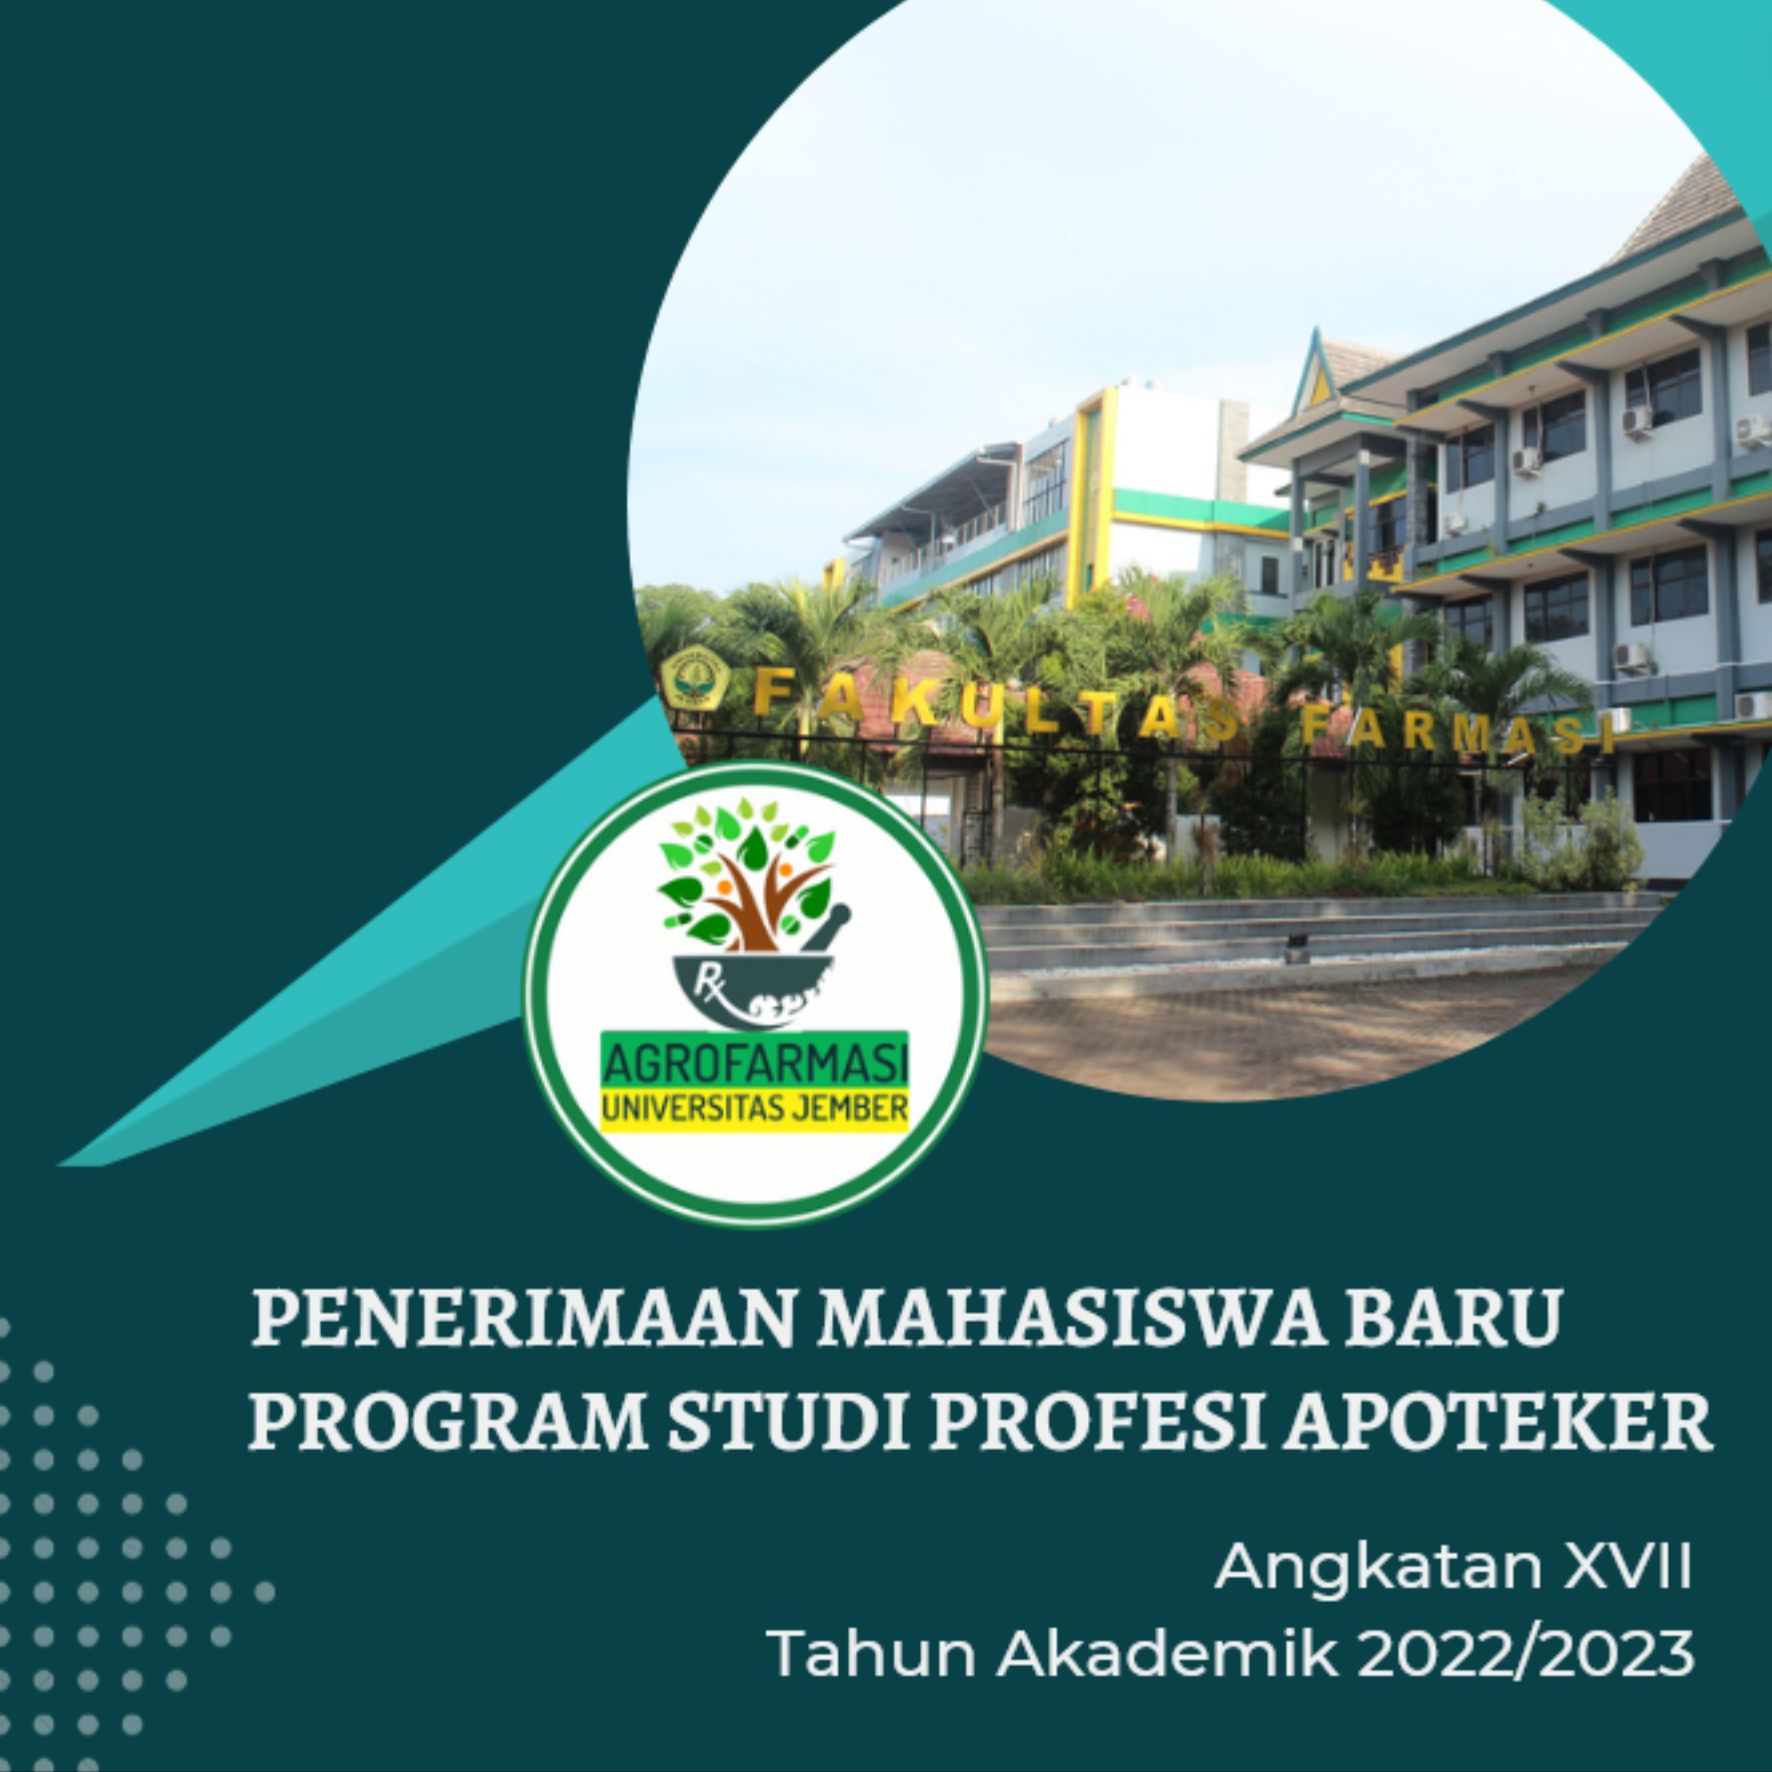 PENERIMAAN MAHASISWA BARU PSPA Angkatan XVII tahun akademik 2022/2023